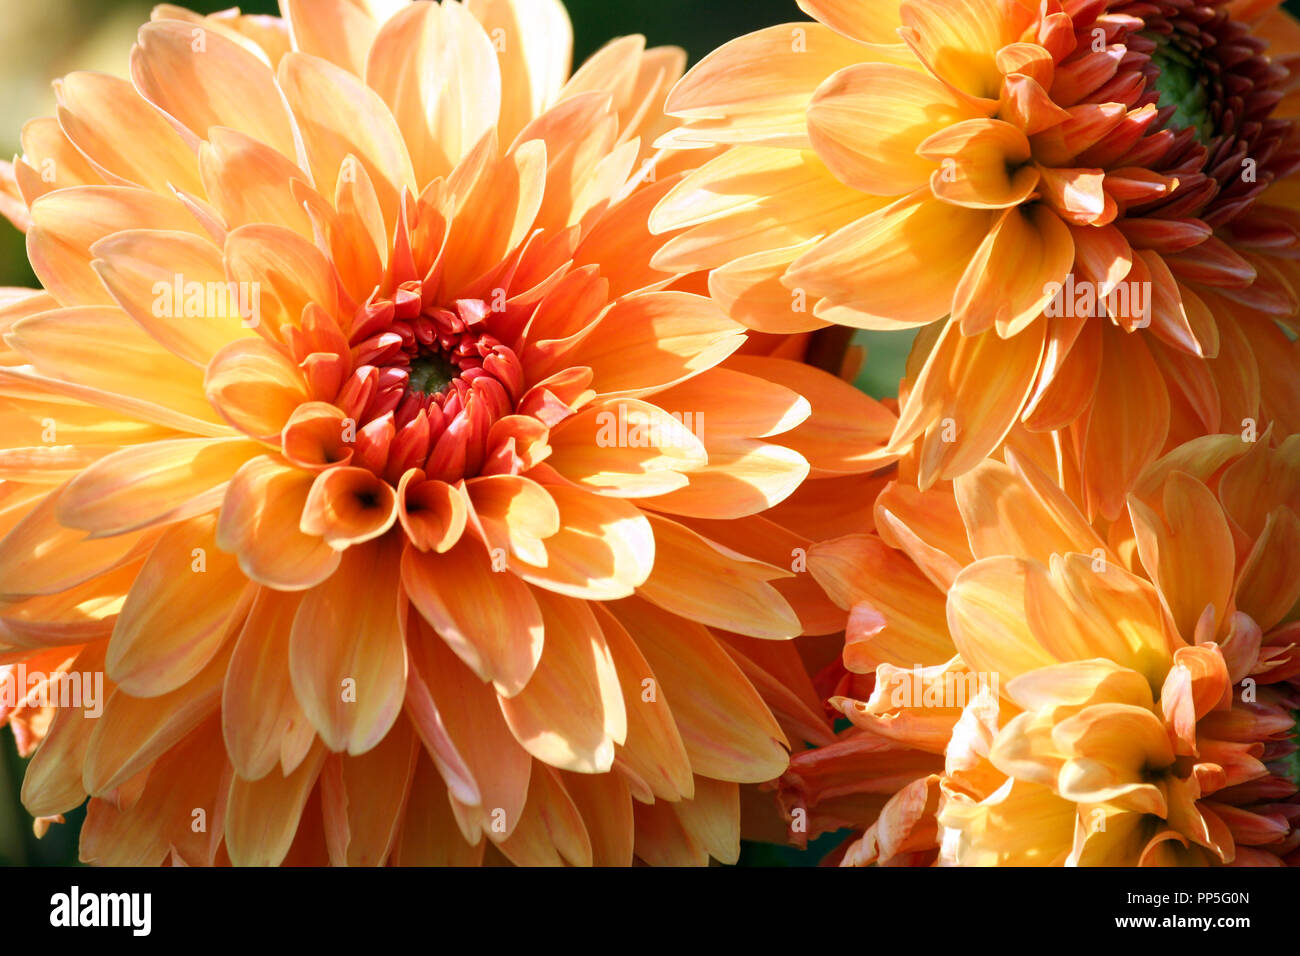 Varietà di crisantemo kids stuff asteraceae pianta, tre grandi fiori arancione in parti, il nucleo è di colore rosso, soleggiata giornata autunnale, close-up, illuminato dal sole Foto Stock